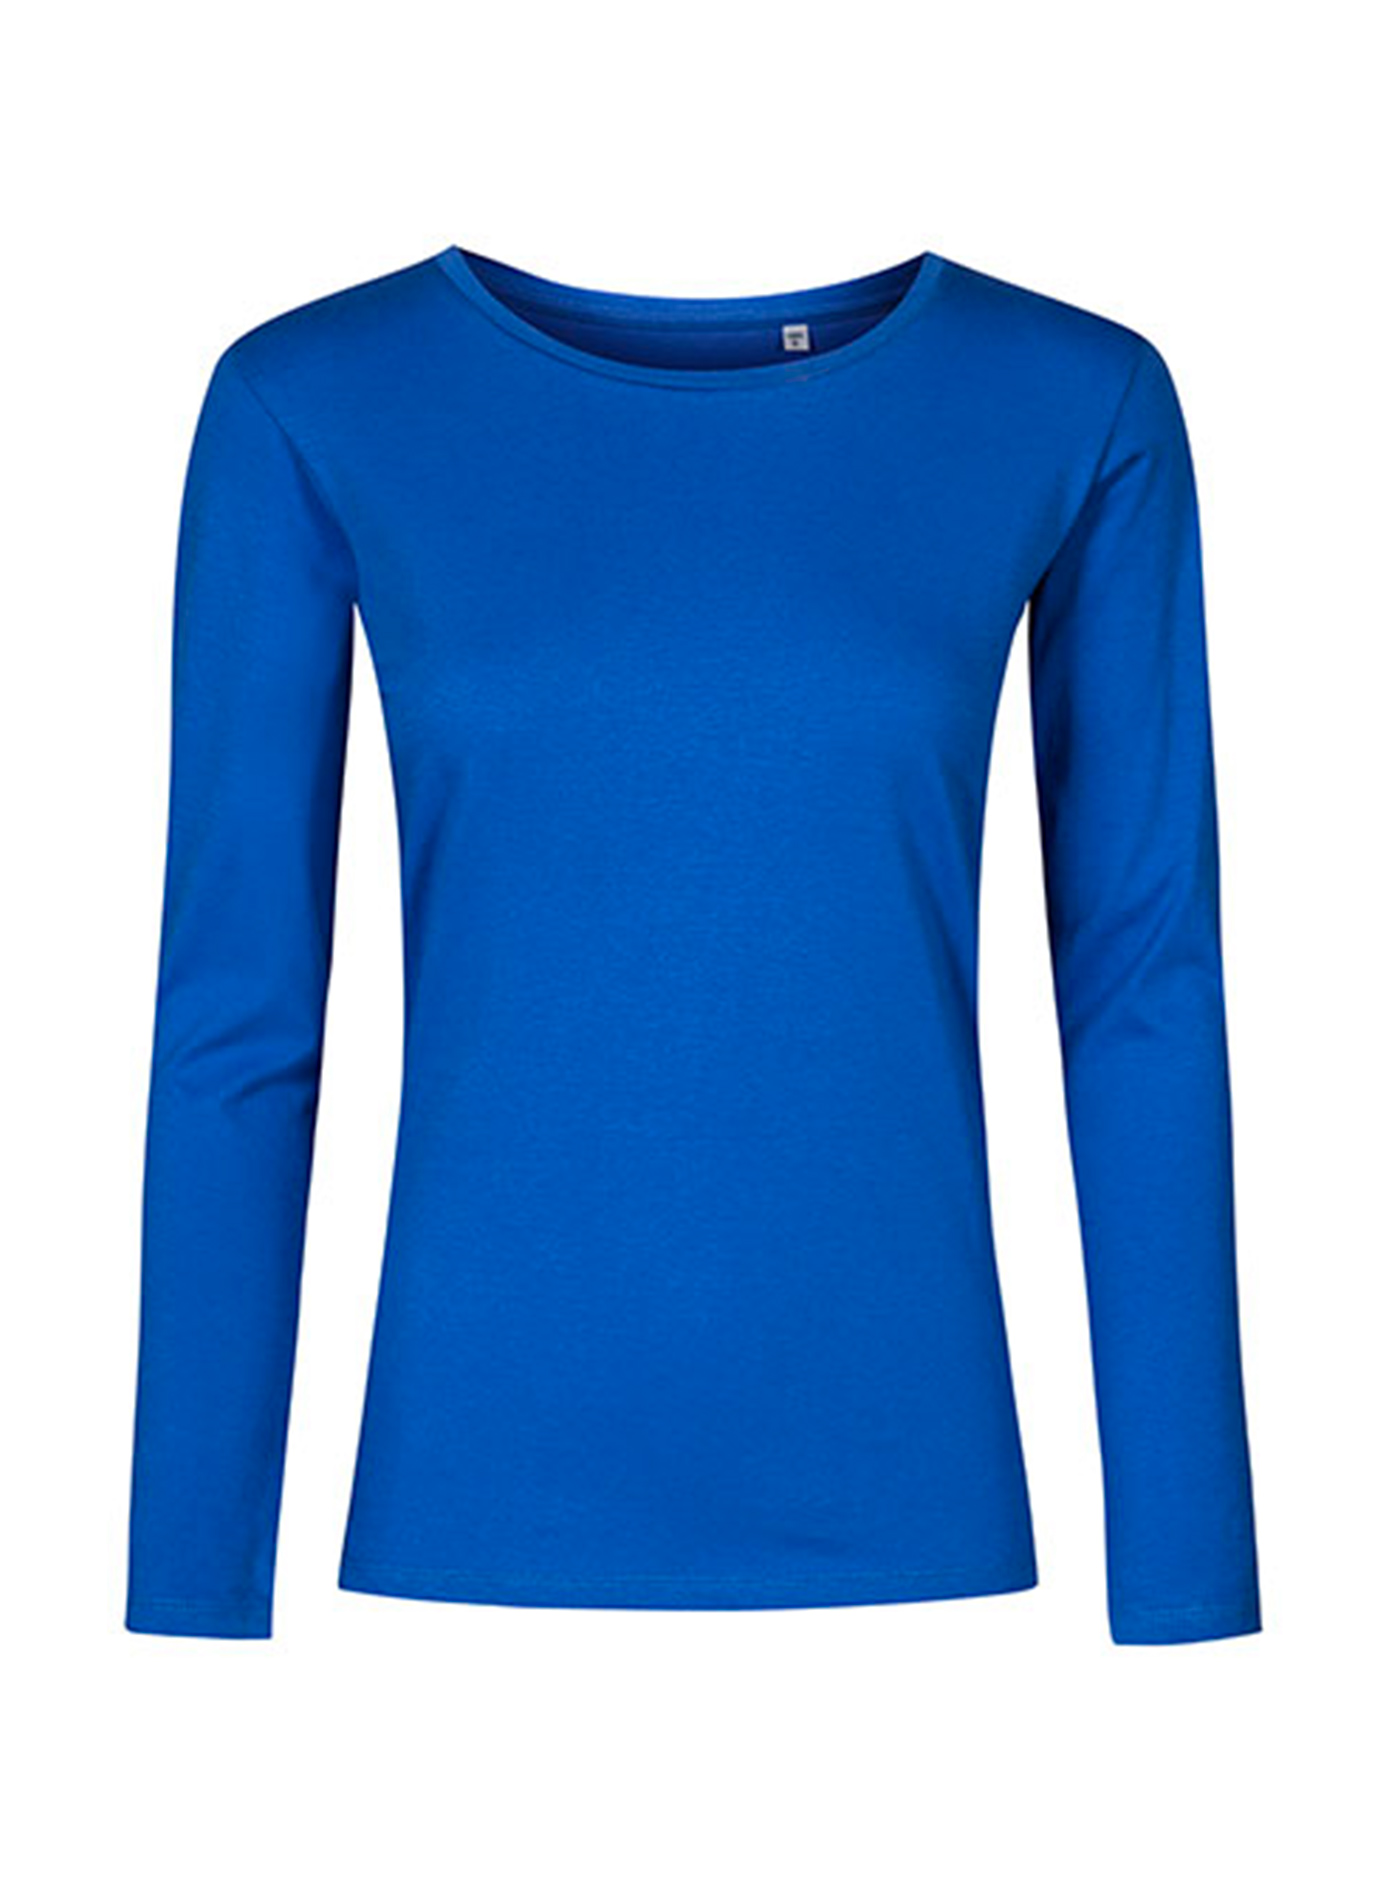 Dámské tričko s dlouhým rukávem s kulatým výstřihem Promodoro - Kobaltově modrá M